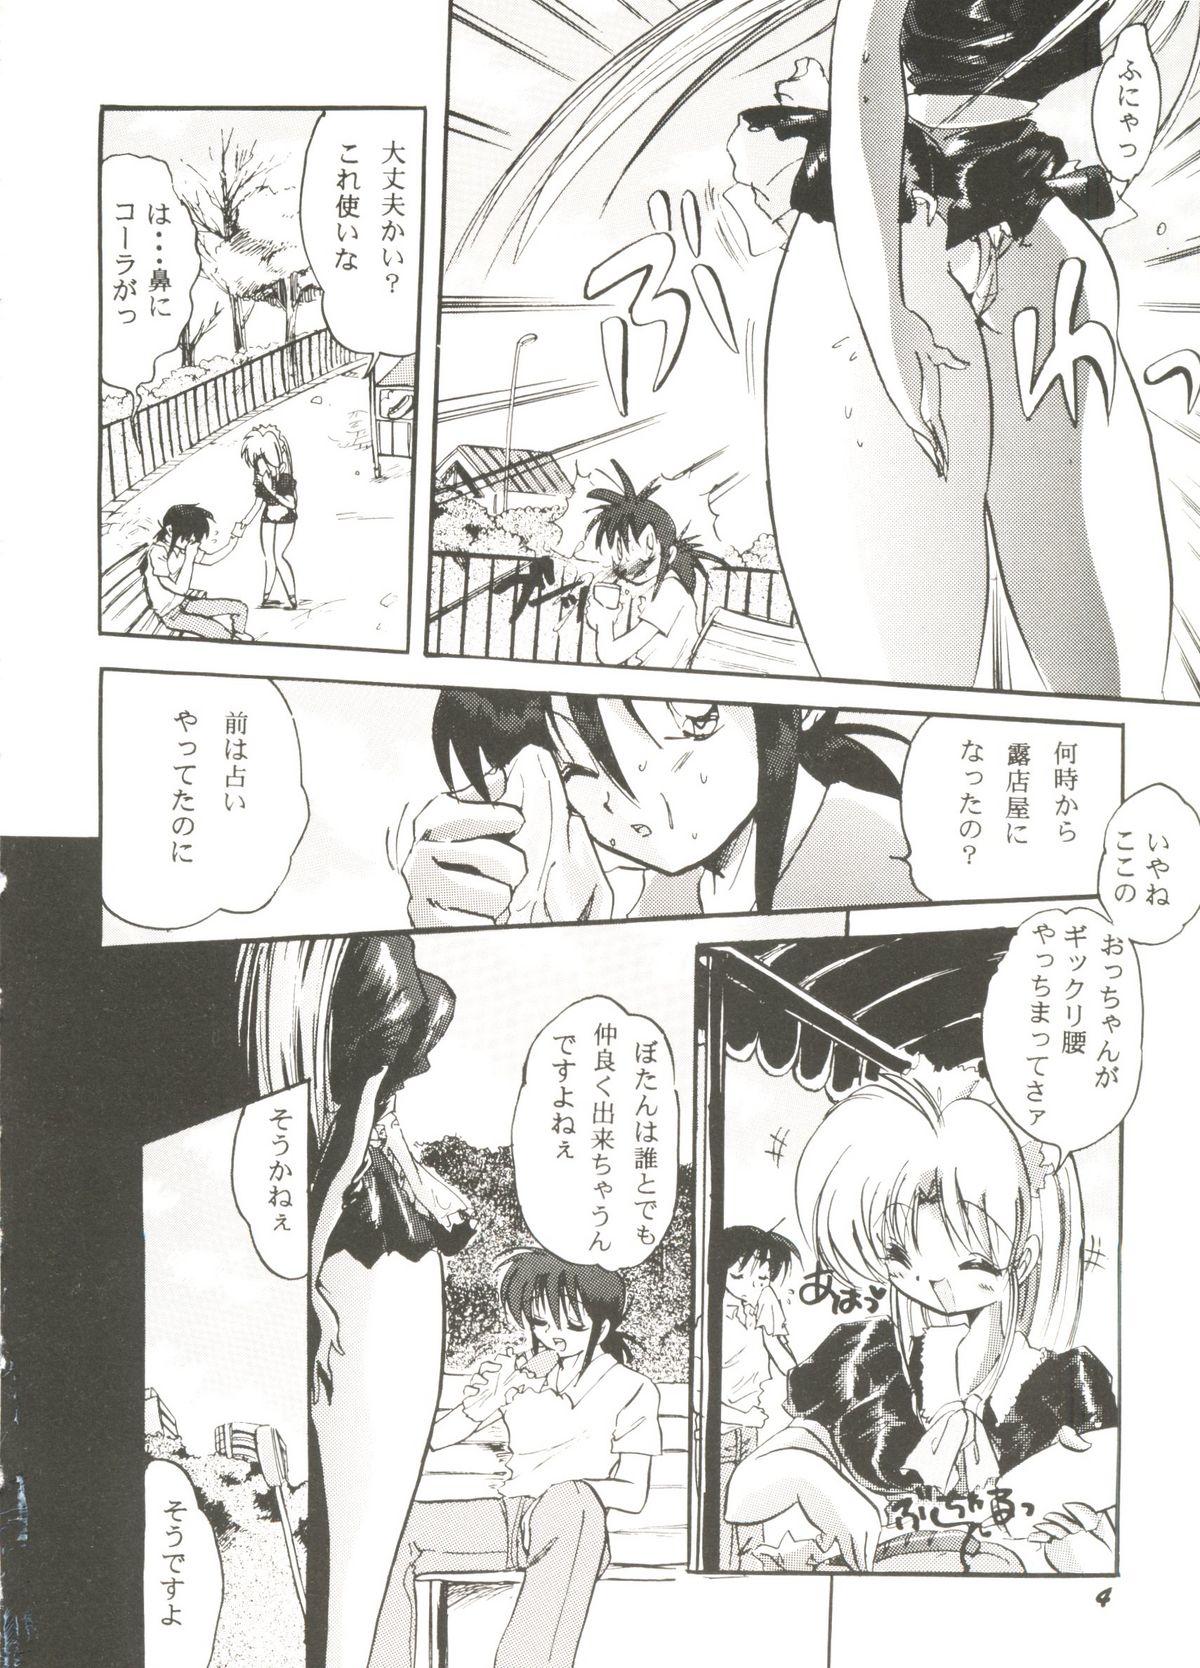 Booty Bishoujo Doujinshi Anthology Cute 3 - Mamotte shugogetten Fancy lala Yu yu hakusho True love story Short - Page 8